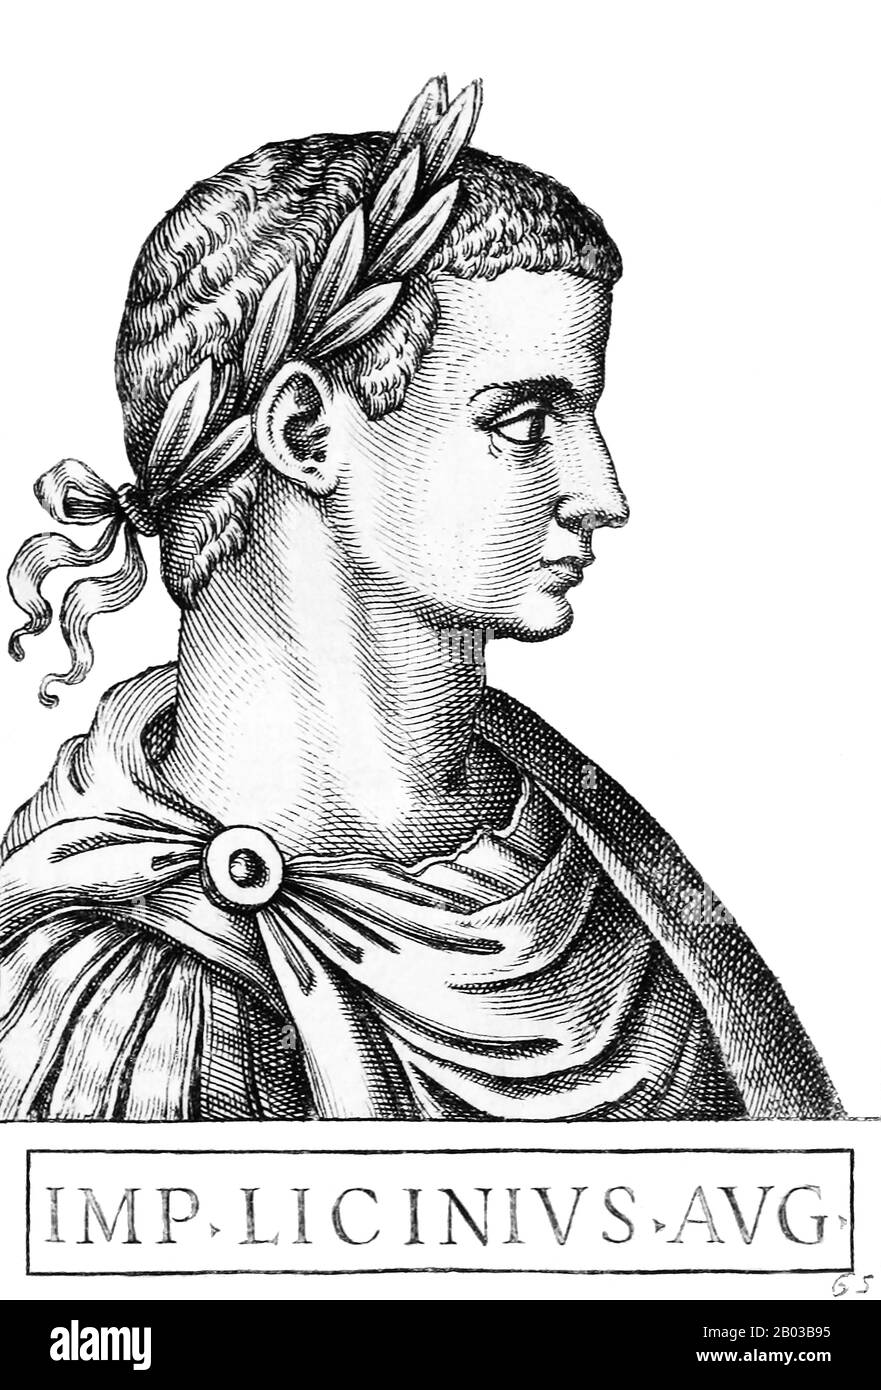 Licinius (263-325) è nato da una famiglia contadina ed è stato un amico d'infanzia del futuro imperatore Galerio, diventando un vicino confidante a Galerio e affidato alle province orientali quando Galerio è andato a trattare con l'usurpatore Massenzio. Galerio elevò Licinius al co-imperatore Augusto in Occidente, nel 308, anche se aveva personalmente il controllo sulle province orientali. Foto Stock